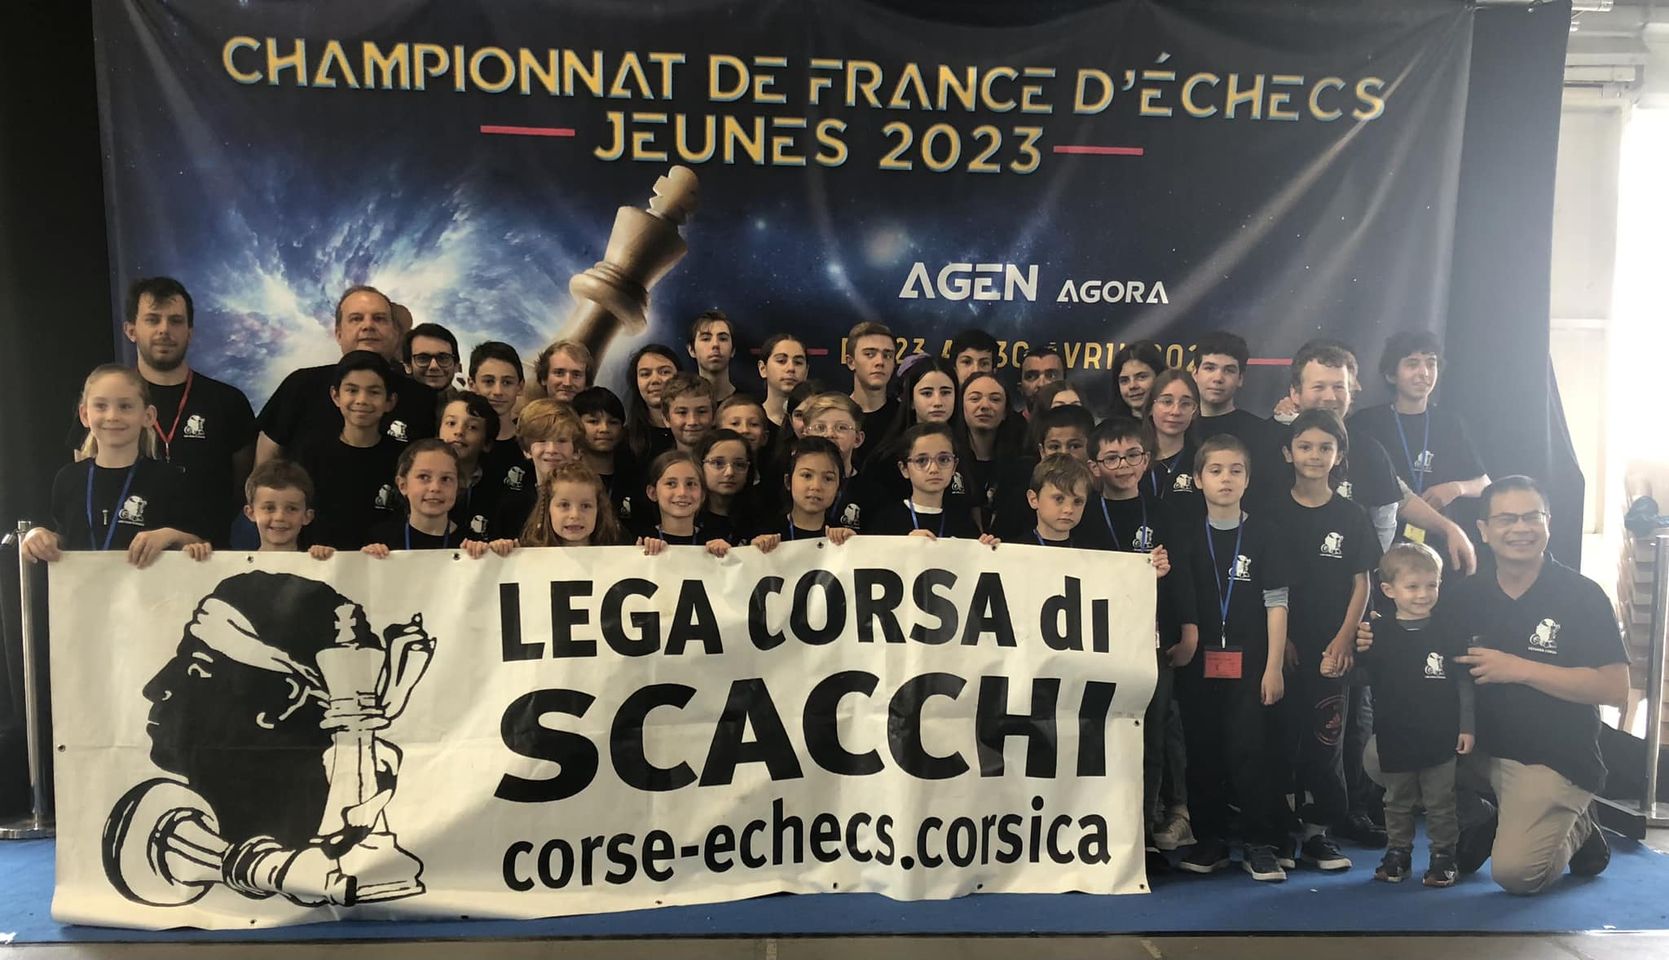                                                                                                                                                                                                                    Championnat de France Jeunes Agen 2023 